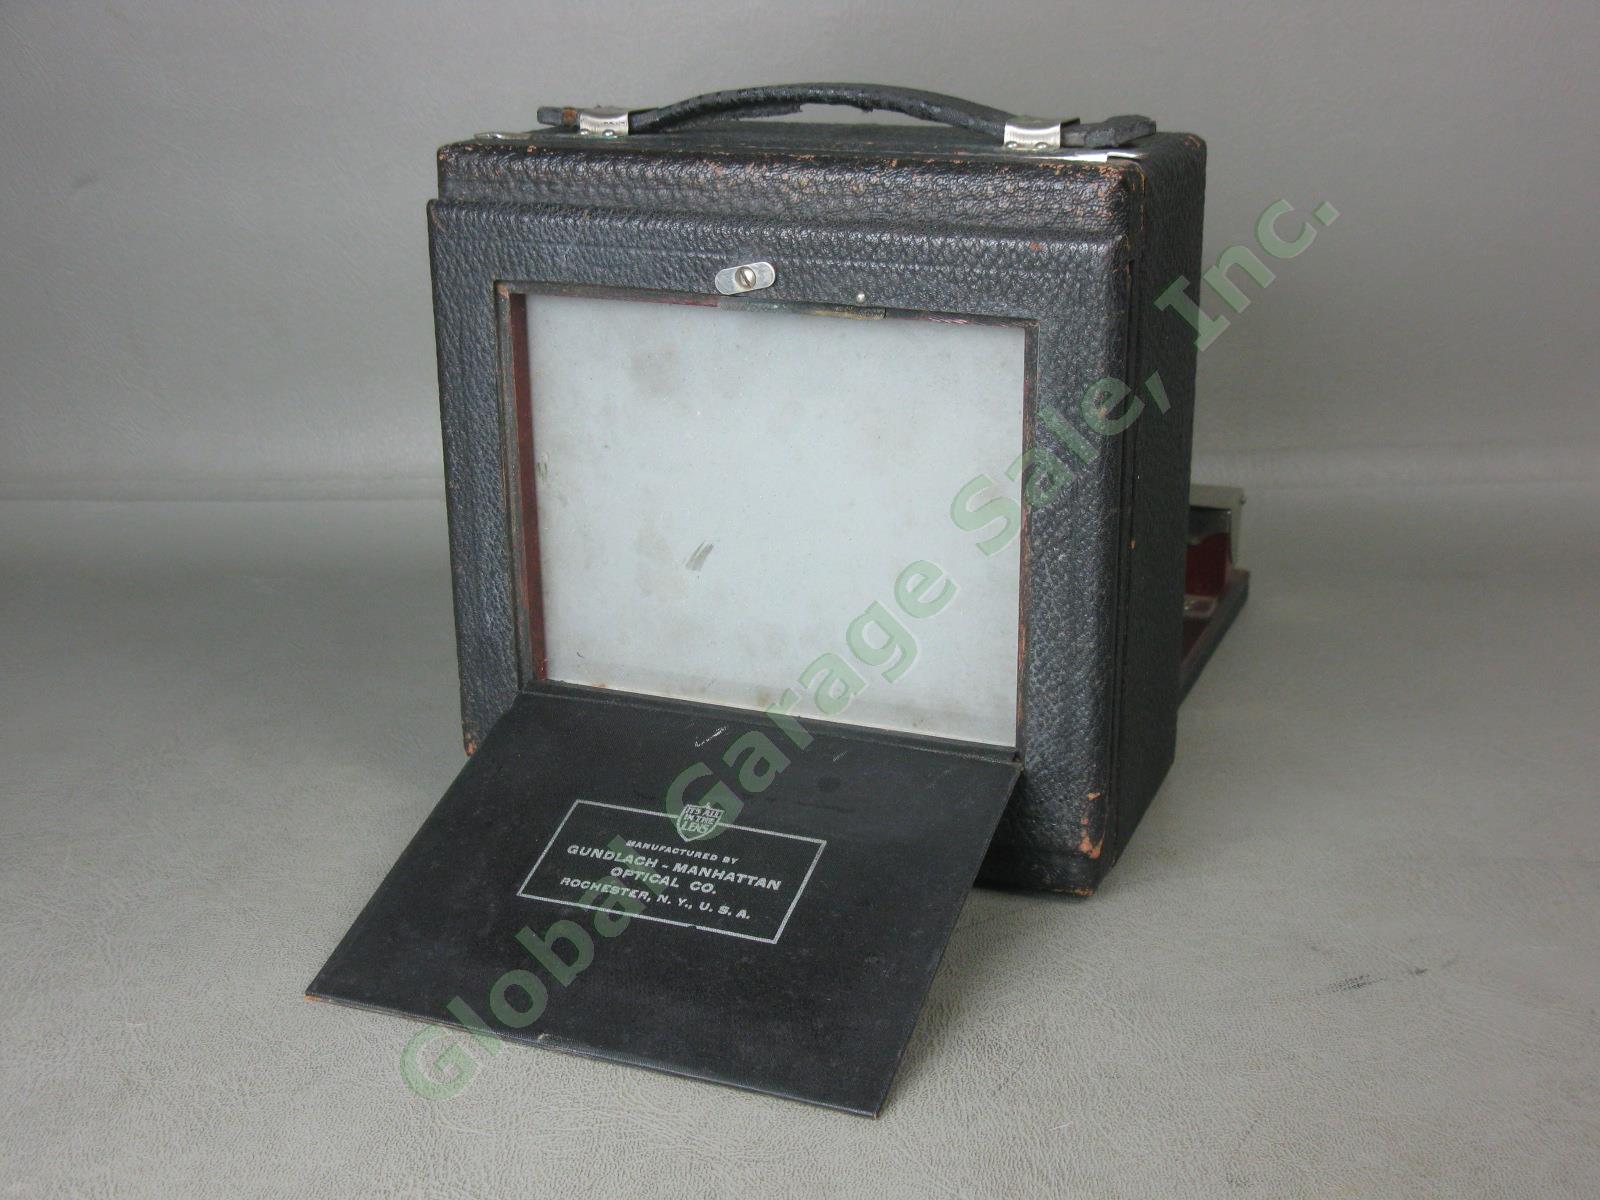 Antique Gundlach 4x5 Folding Camera Wollensack Betax No 2 f/6.3 Series IV Lens 7